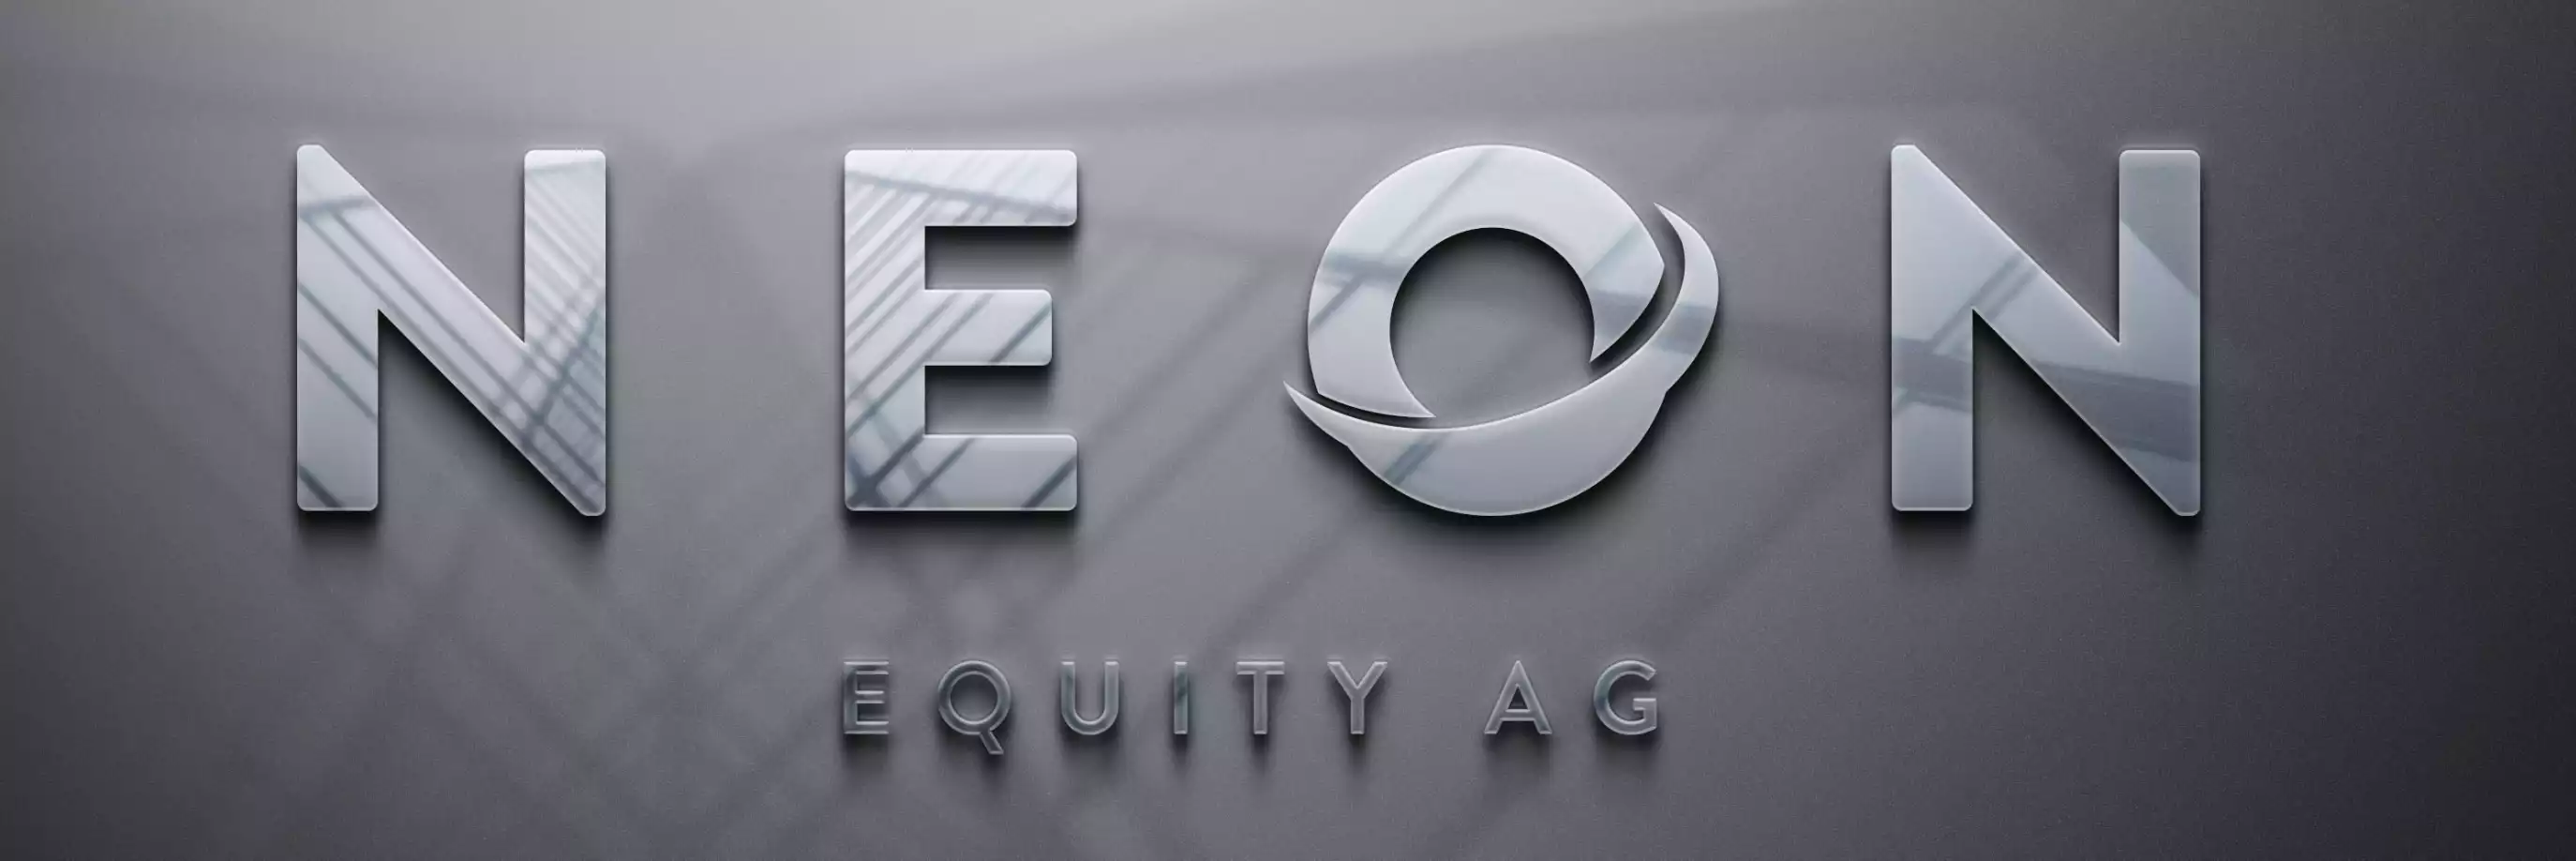 NEON EQUITY AG Unternehmensanleihe – Anleihe mit 10 % Zinsen p.a. über 5 Jahre - Titelbild